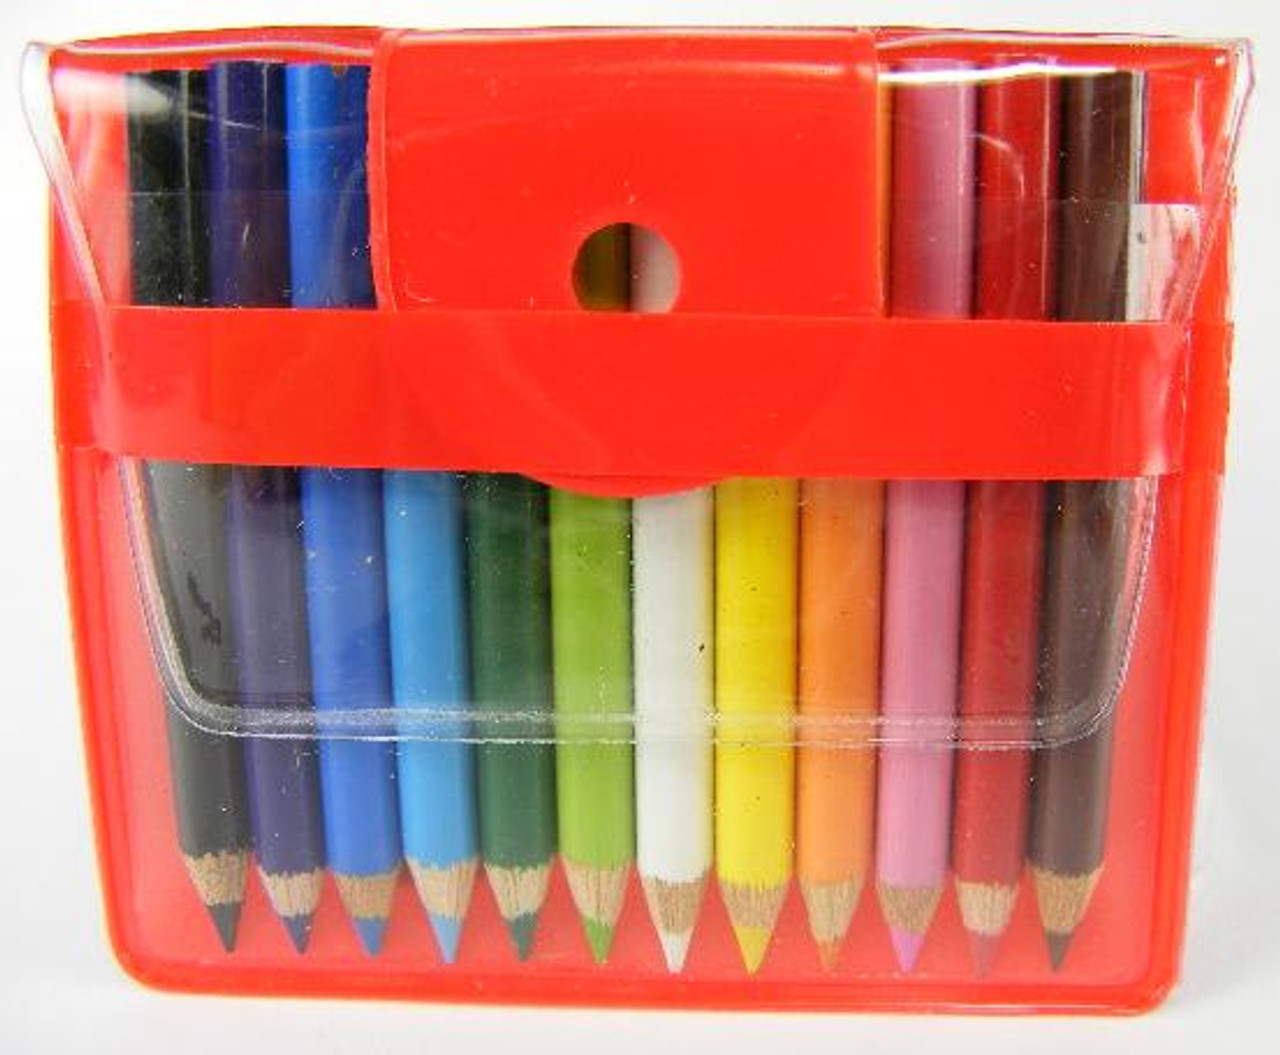 Mini Color Pencils in case